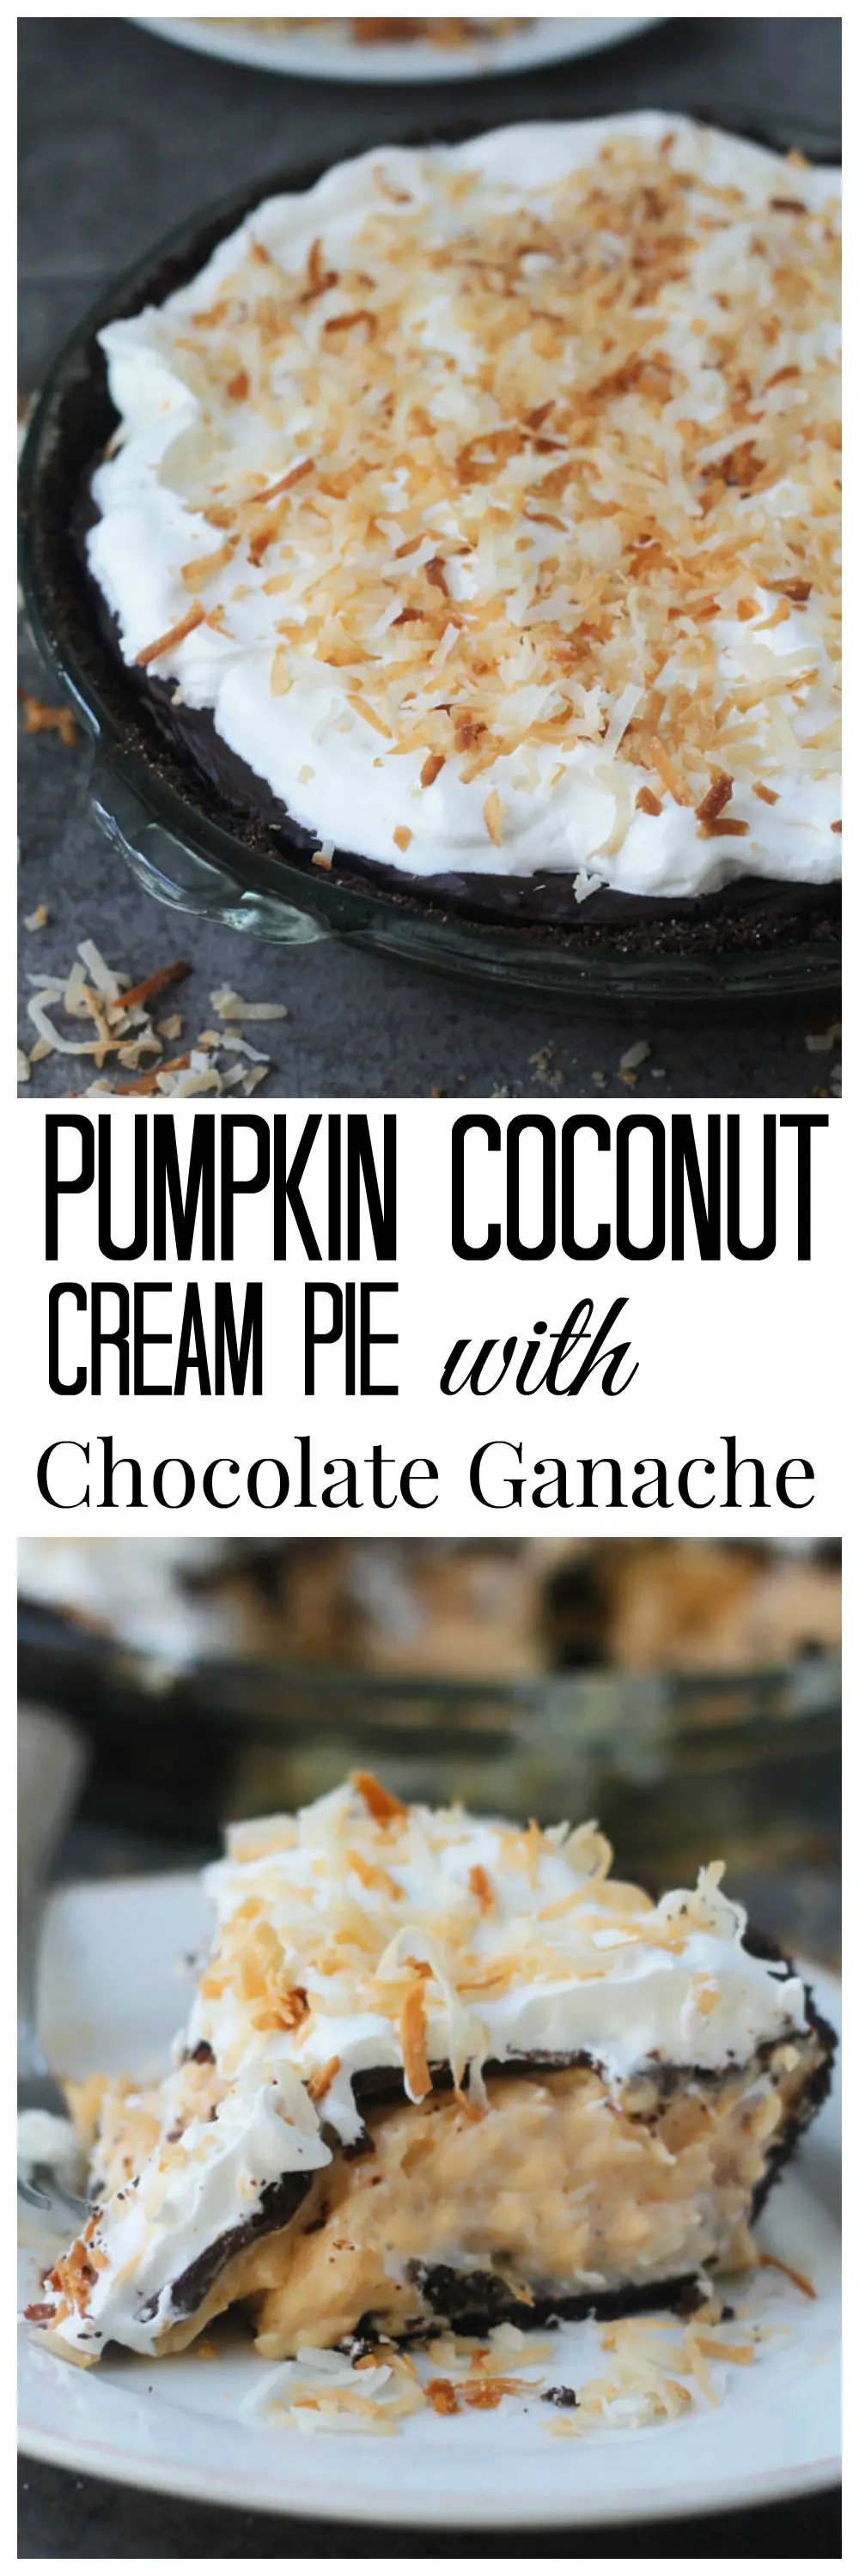 Pumpkin Coconut Cream Pie with Chocolate Ganache